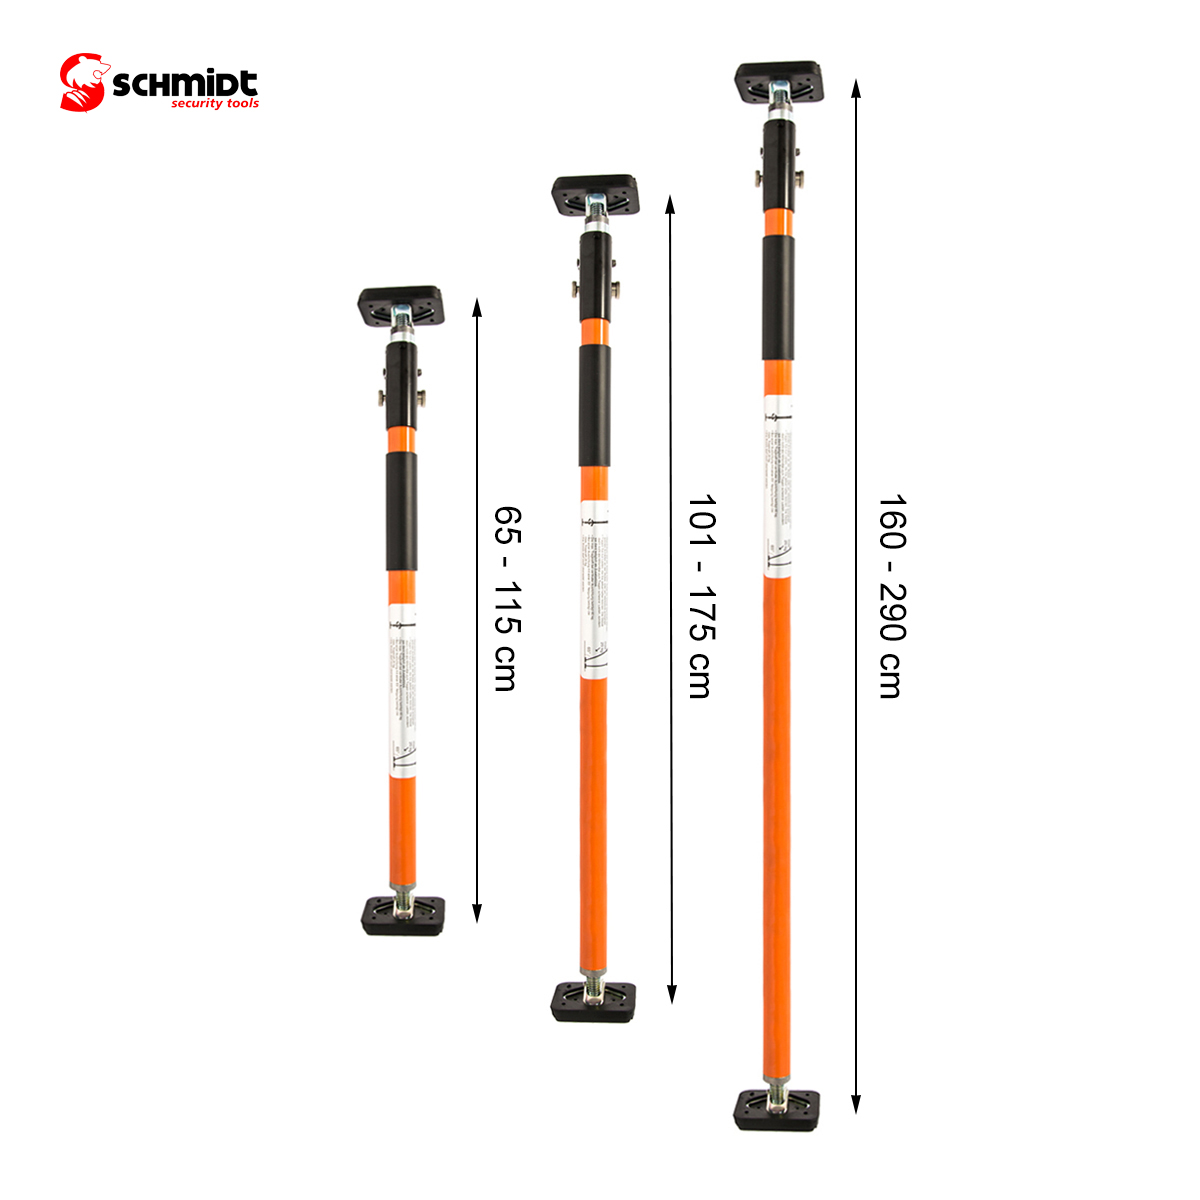 SCHMIDT SECURITY Universalspanner Orange 160-290cm - für TOOLS Ladungssicherung Stütze, Klemmstange Fahrzeuge